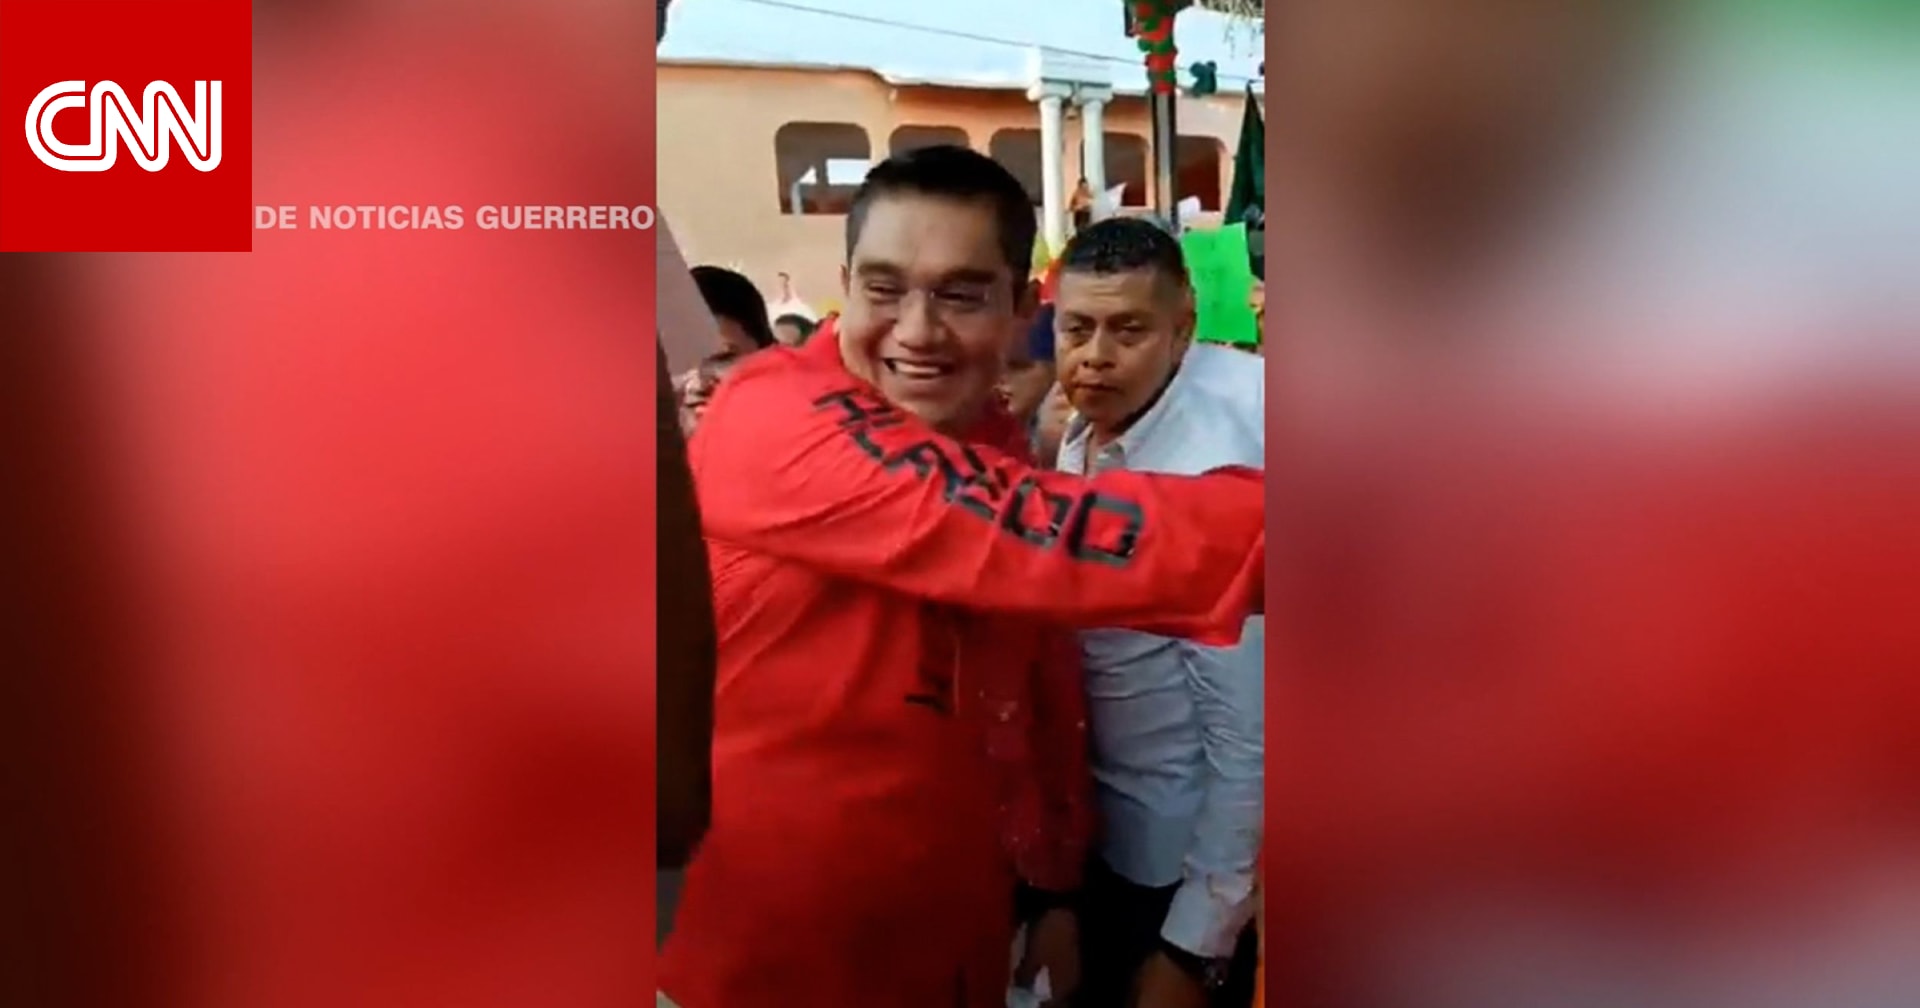 صراخ وهلع.. كاميرا ترصد لحظة قتل مرشح في المكسيك برصاصة مباغتة في الرأس أمام الناس